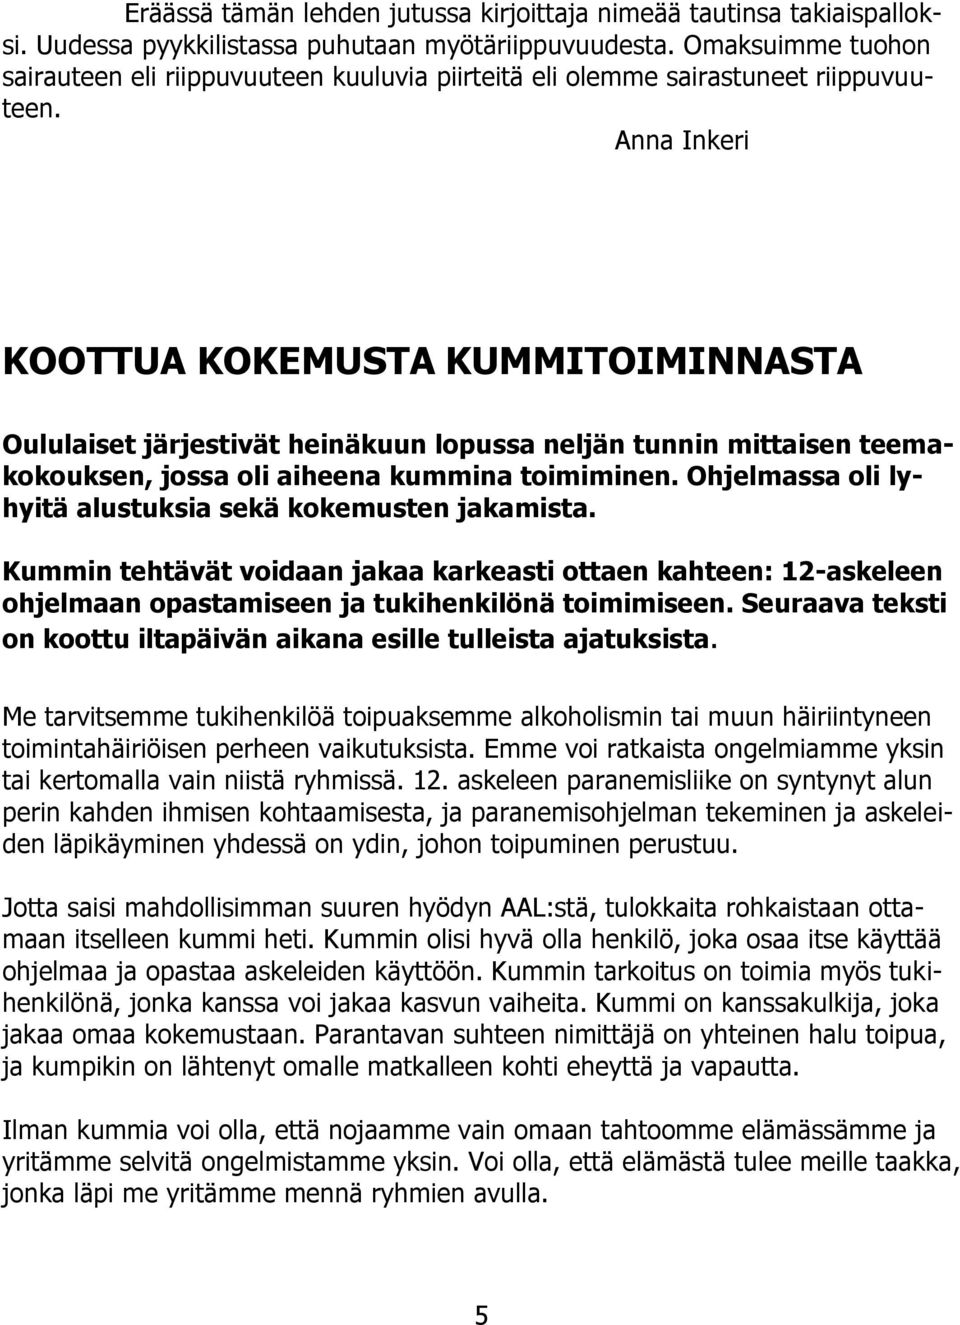 Anna Inkeri KOOTTUA KOKEMUSTA KUMMITOIMINNASTA Oululaiset järjestivät heinäkuun lopussa neljän tunnin mittaisen teemakokouksen, jossa oli aiheena kummina toimiminen.